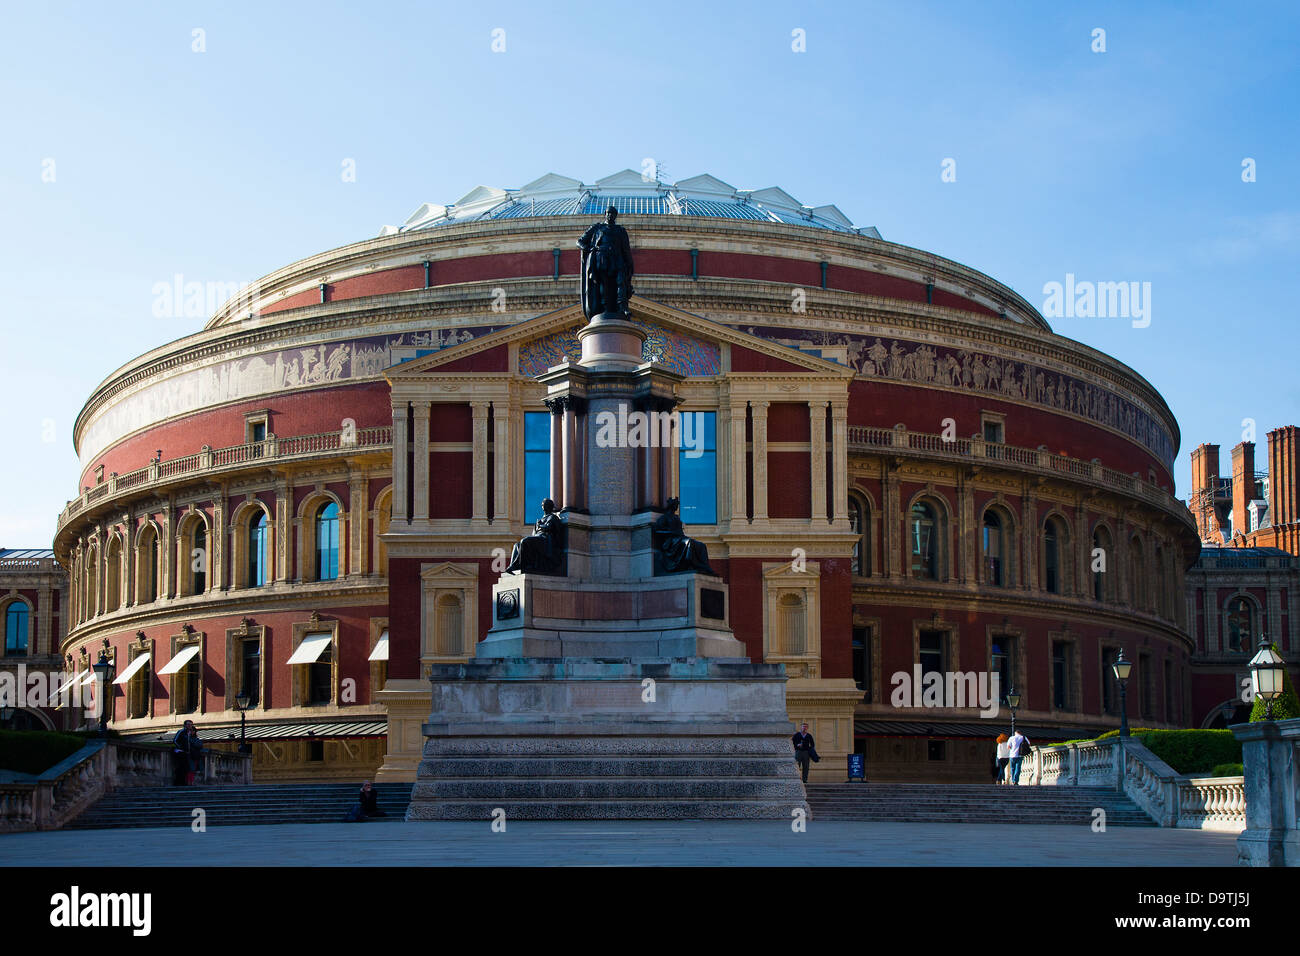 Al lado sur del Royal Albert Hall, el Concert Hall, Kensington, Londres, Reino Unido. Foto de stock